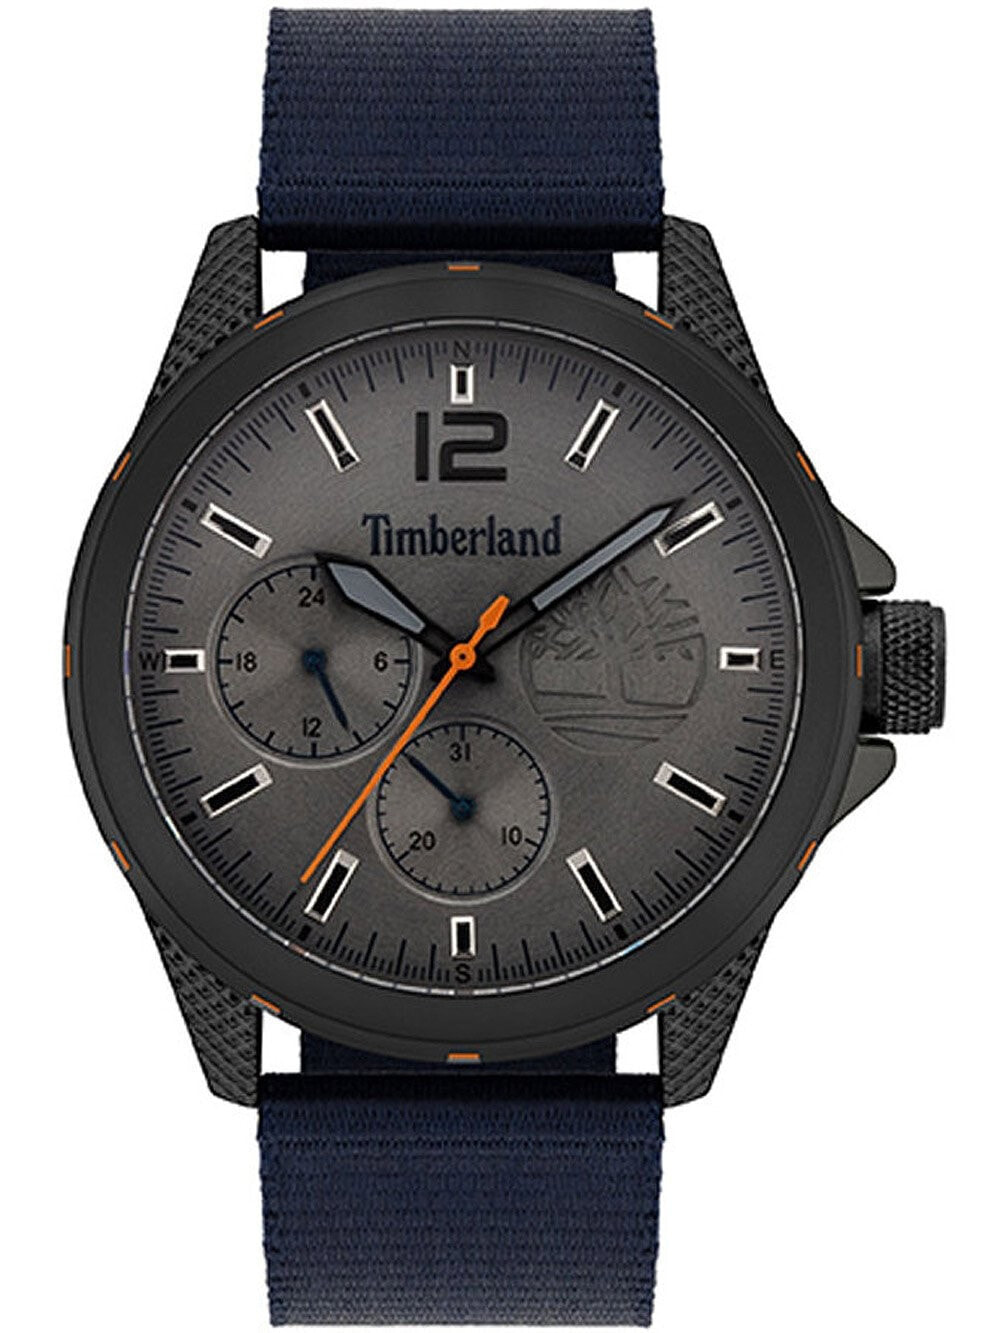 Мужские наручные часы с синим текстильным ремешком Timberland TBL15944JYB.13 Taunton Herren 44mm 5ATM